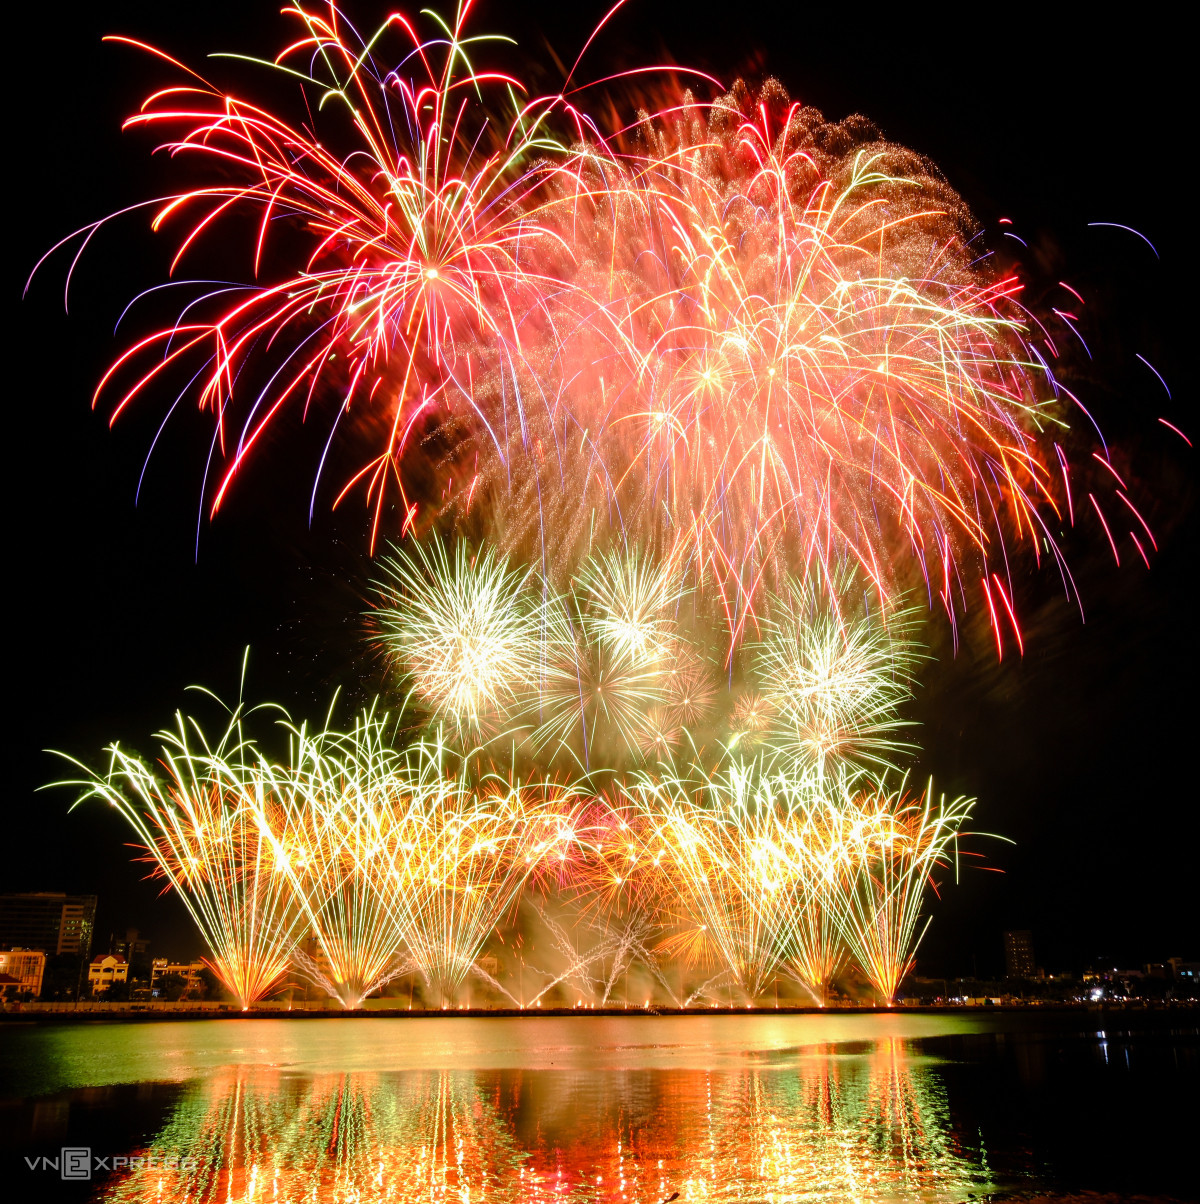 France wins Da Nang International Fireworks Festival